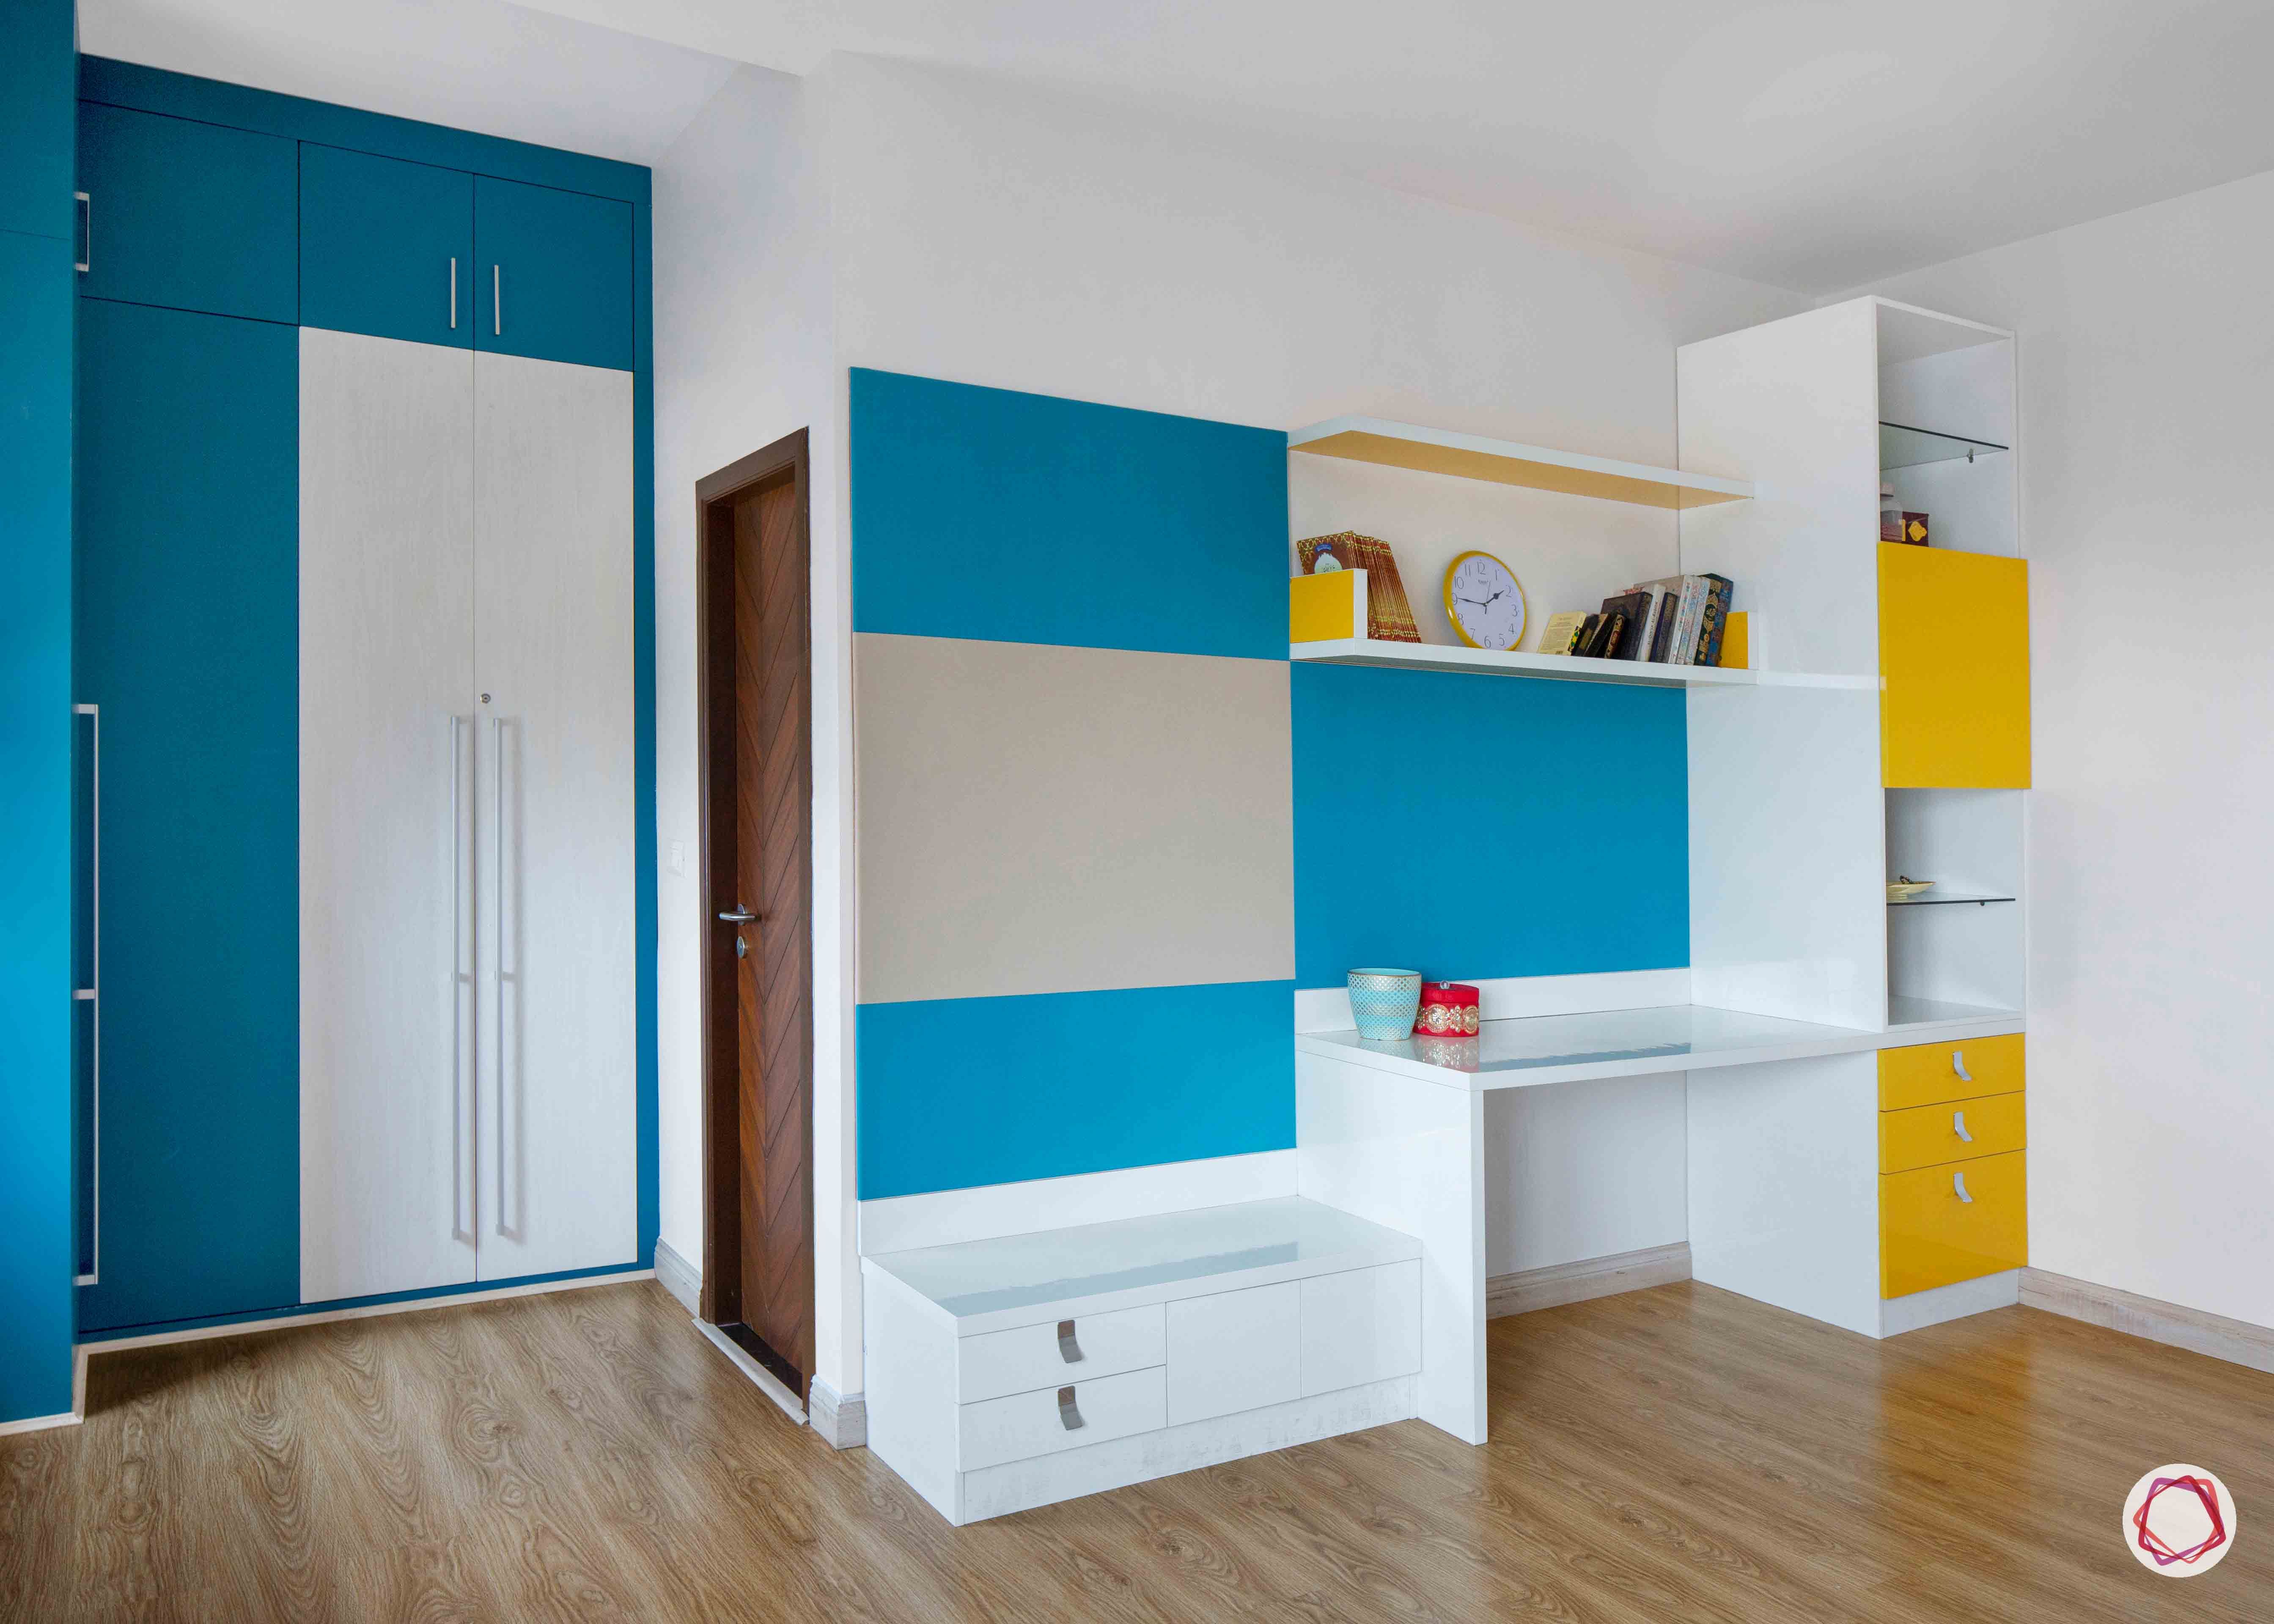 kitchen design ideas blue wardrobe